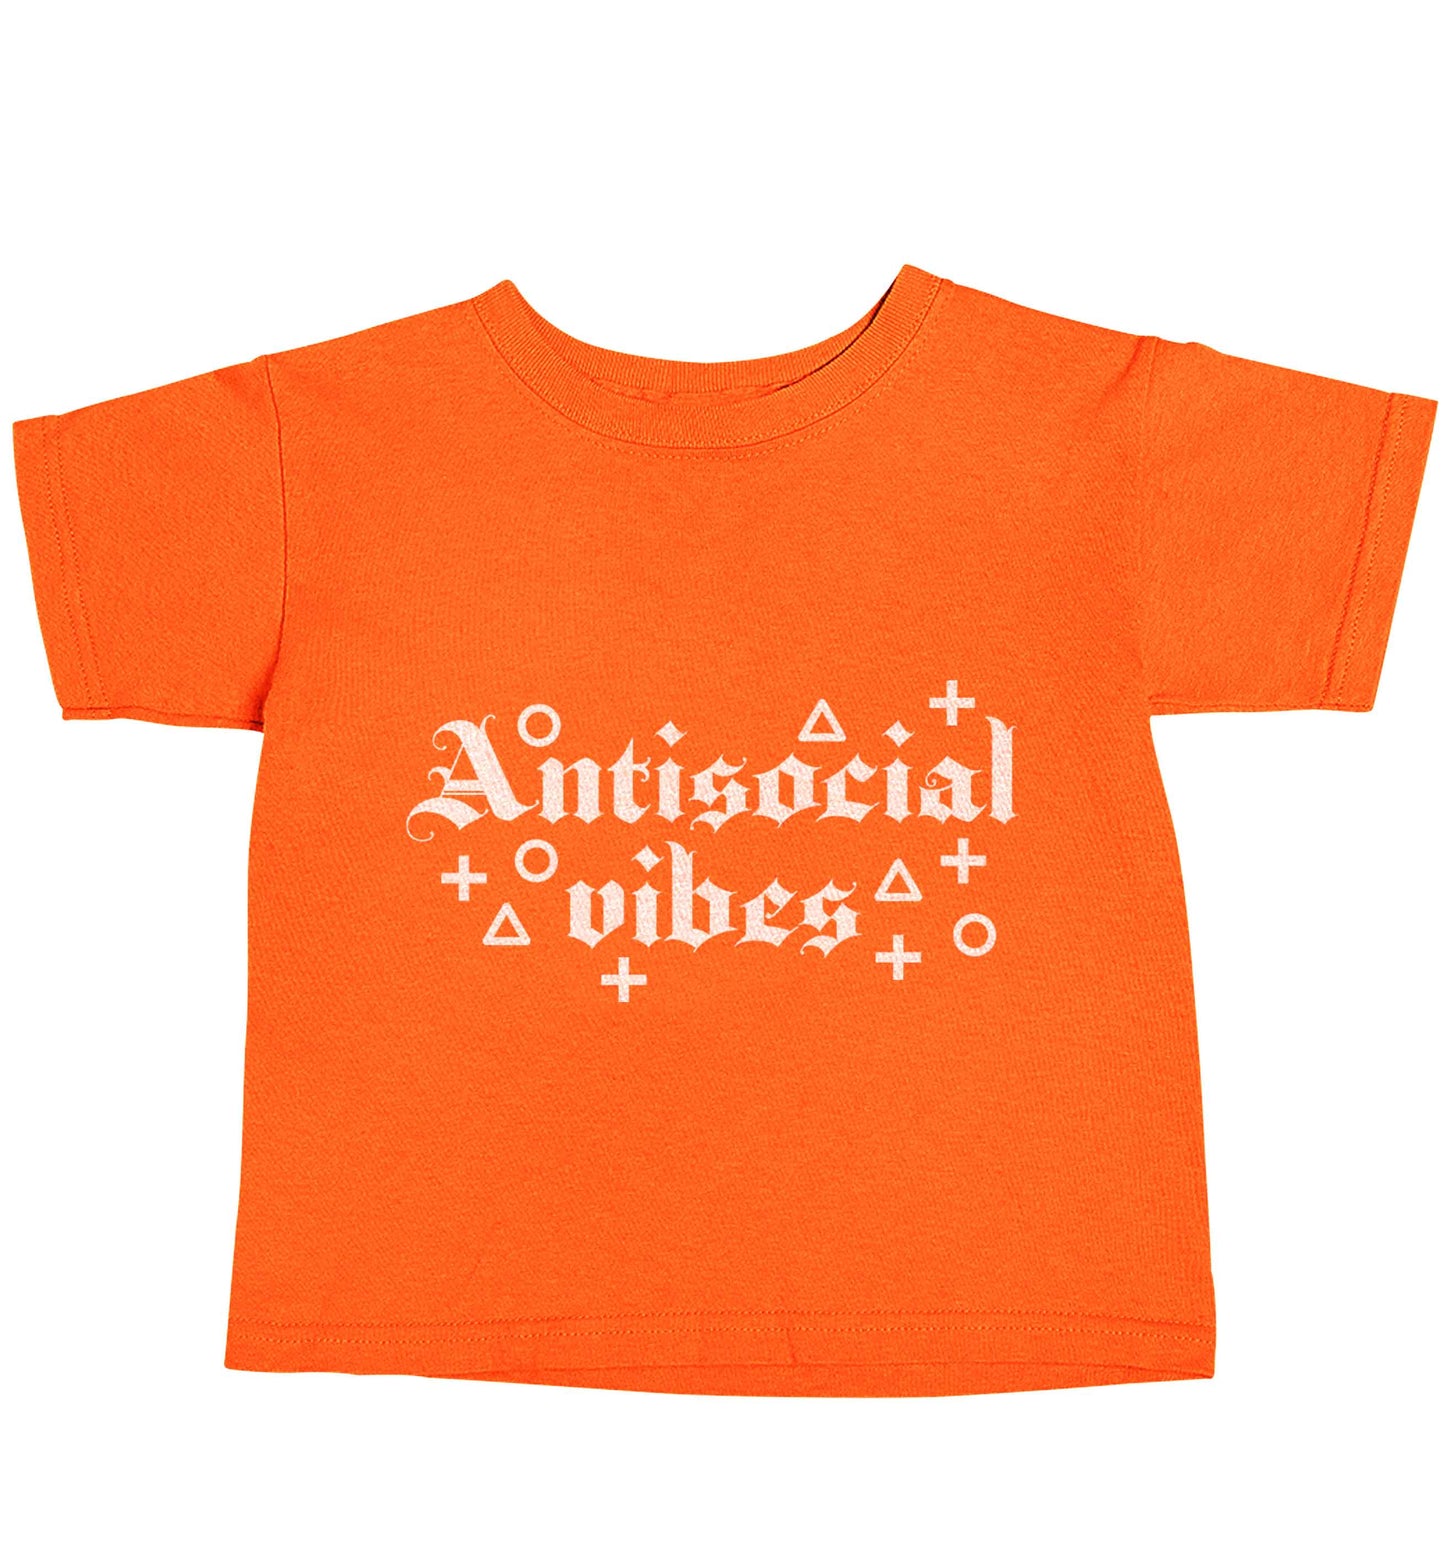 Antisocial vibes orange baby toddler Tshirt 2 Years